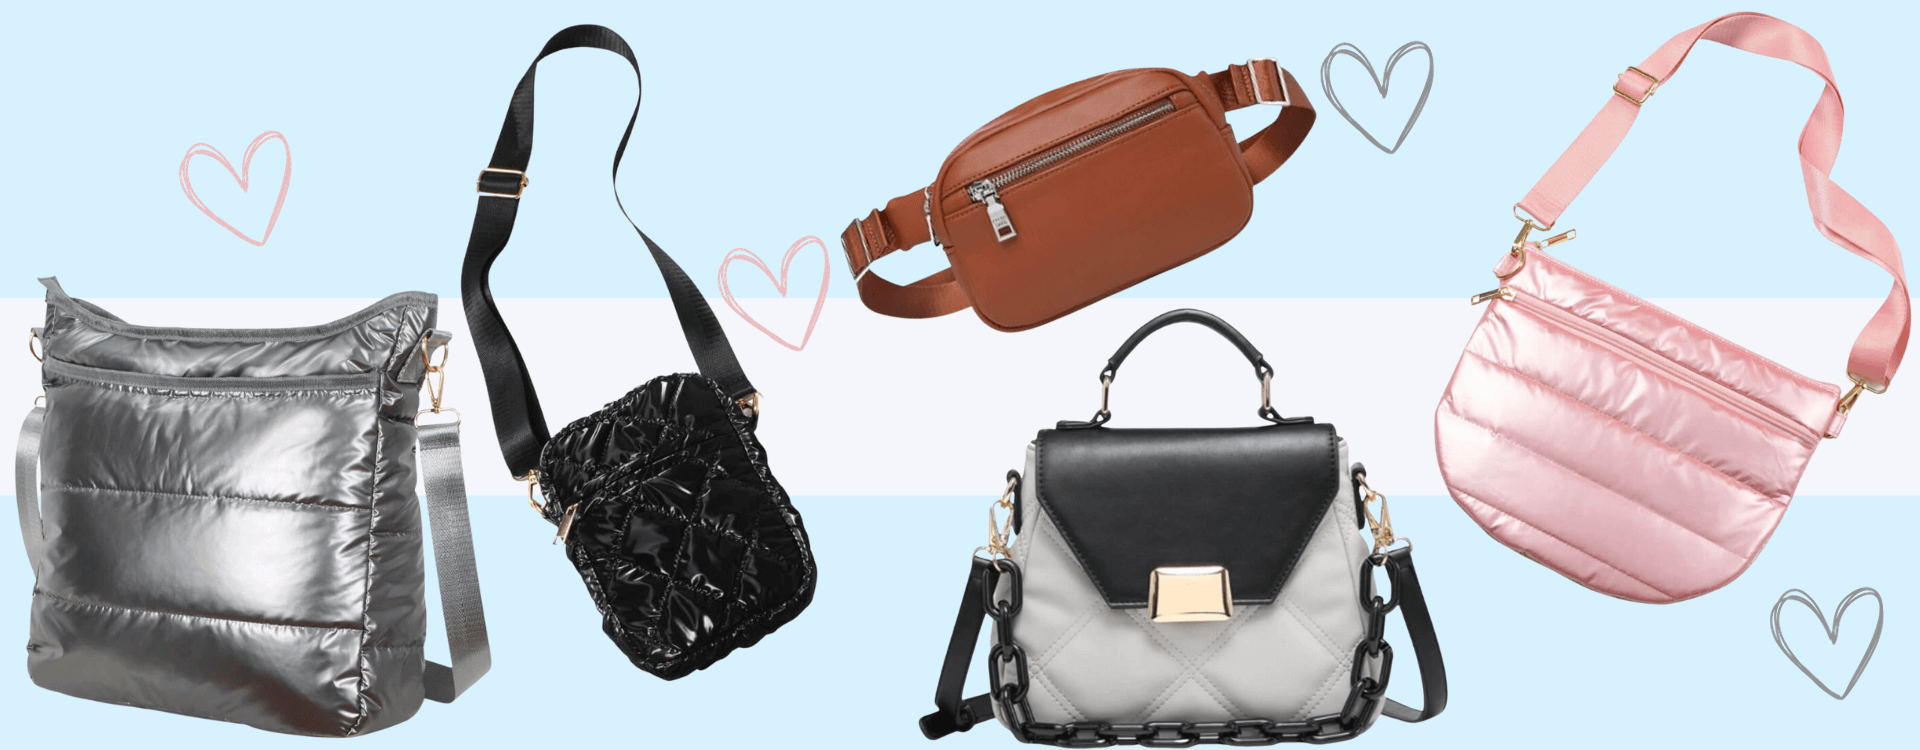 Shop Our Favorite Unique Handbags | Who What Wear